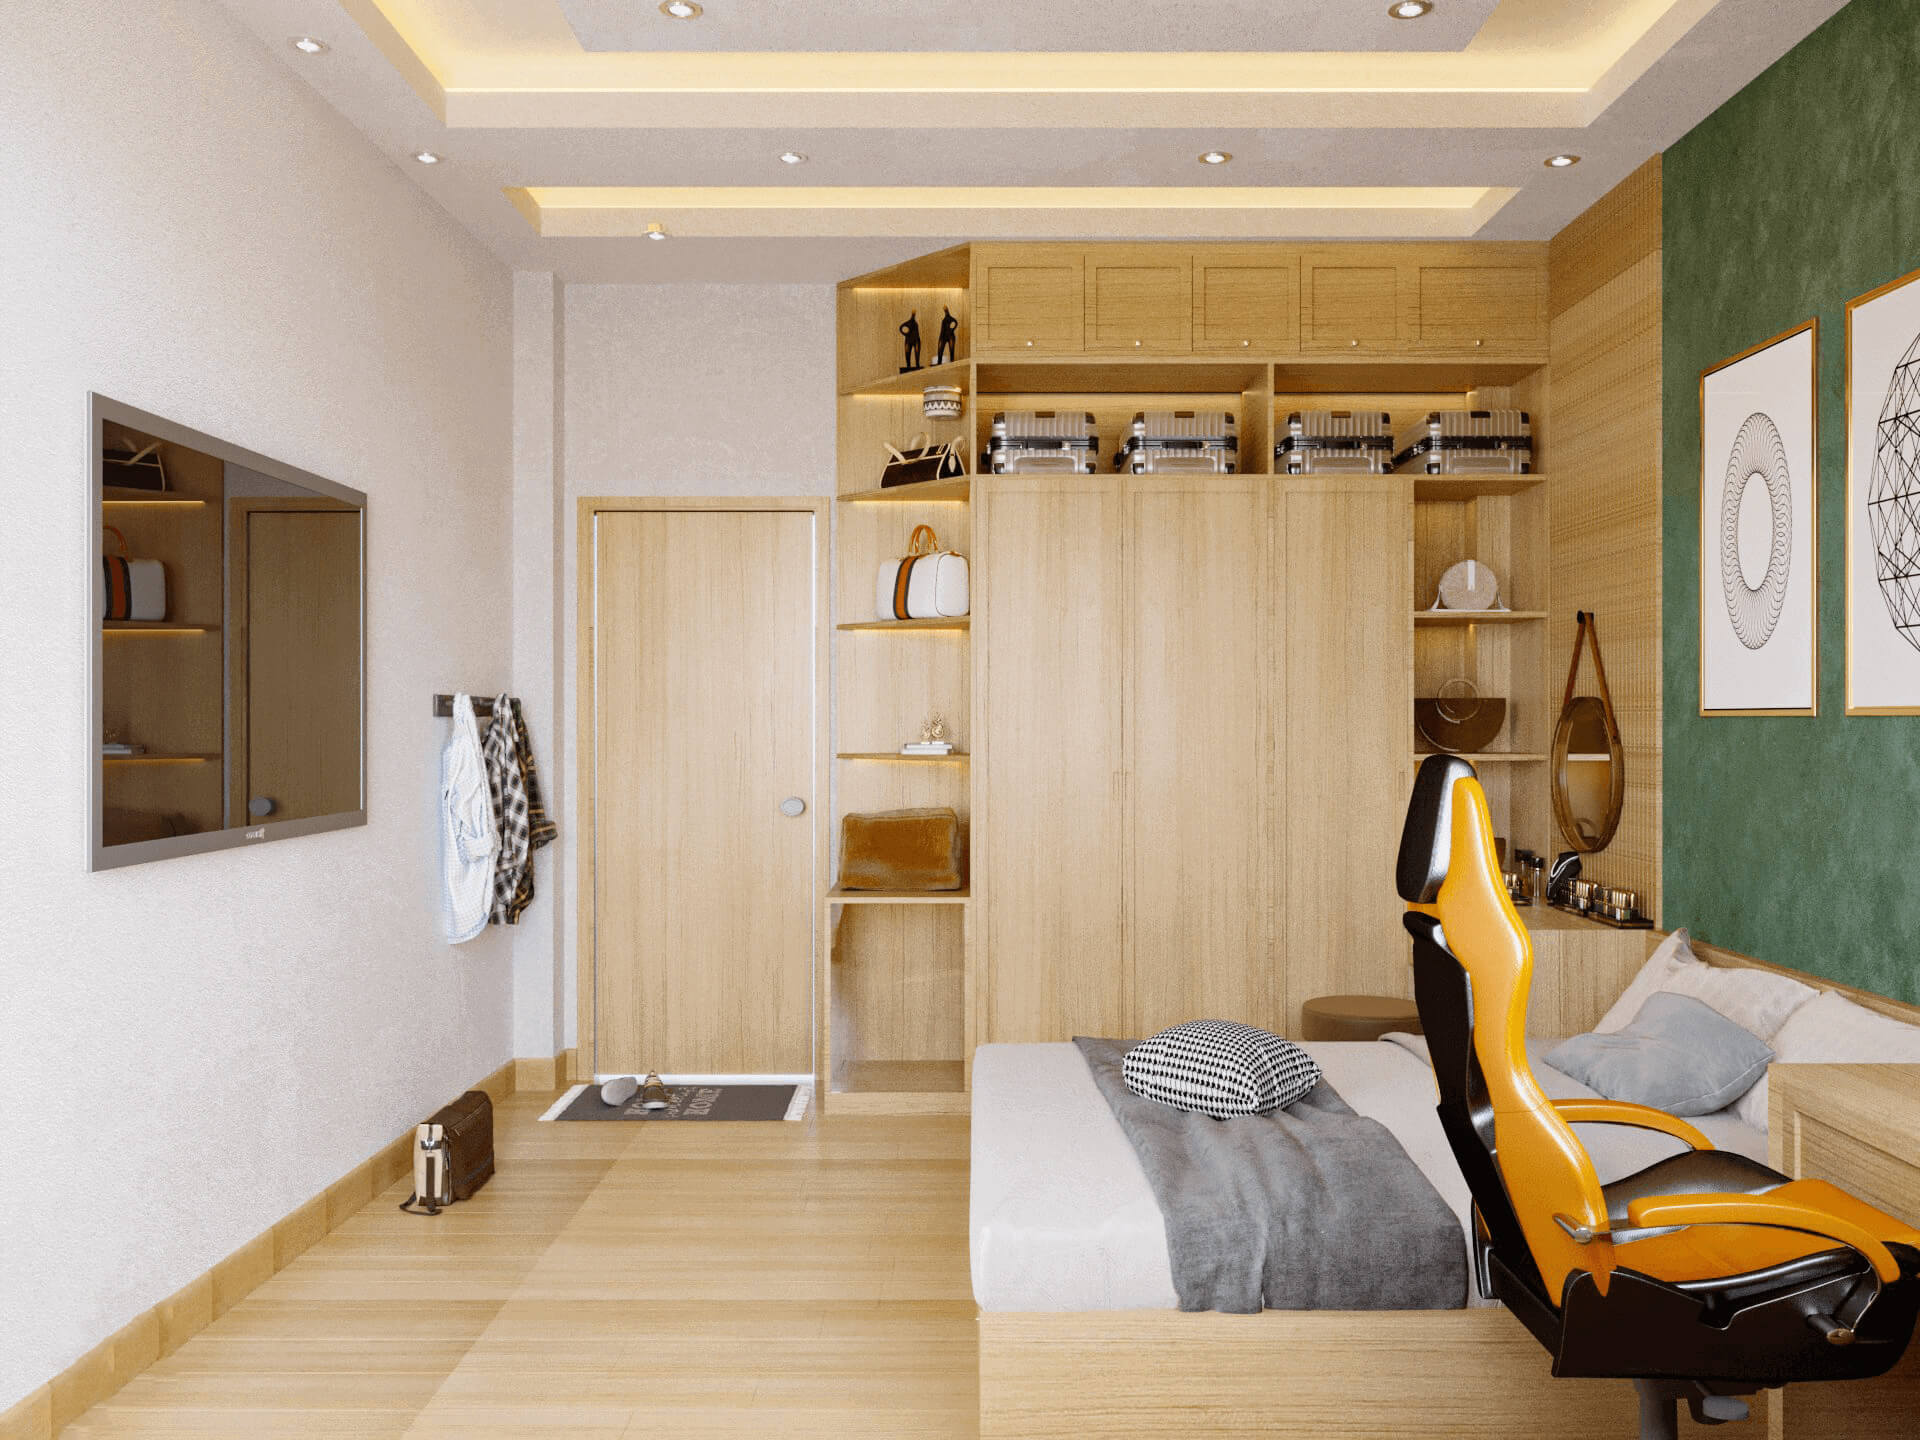 Phòng ngủ, phong cách Bắc Âu Scandinavian, thiết kế concept nội thất, nhà phố Lê Đức Thọ Gò Vấp